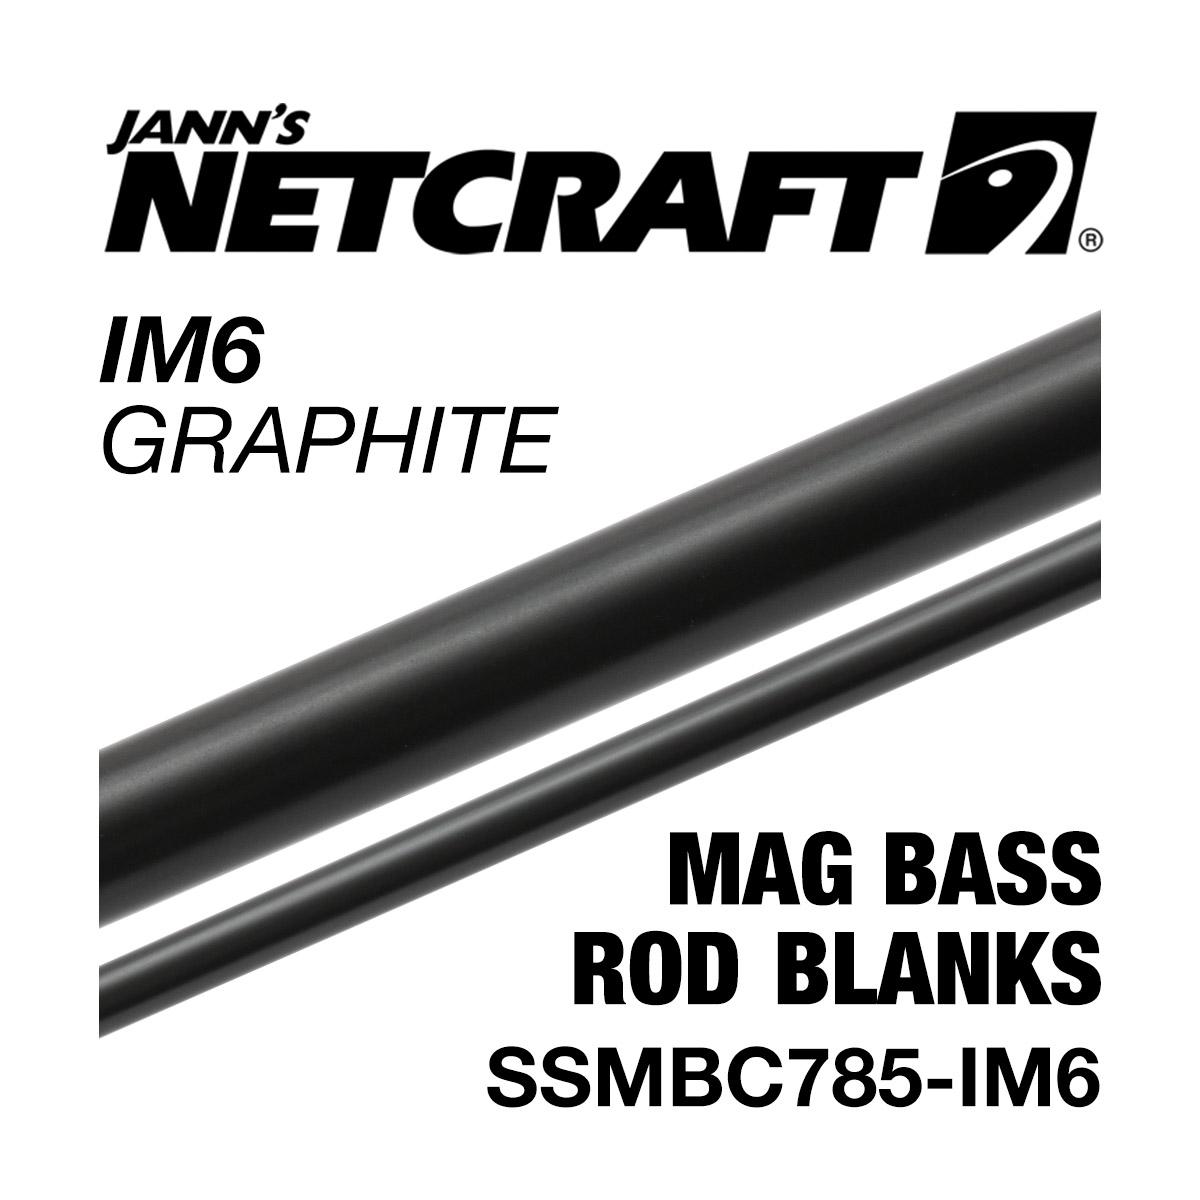 Netcraft IM6 Graphite Mag Bass Fishing Rod Blank, 6'6 Medium Heavy